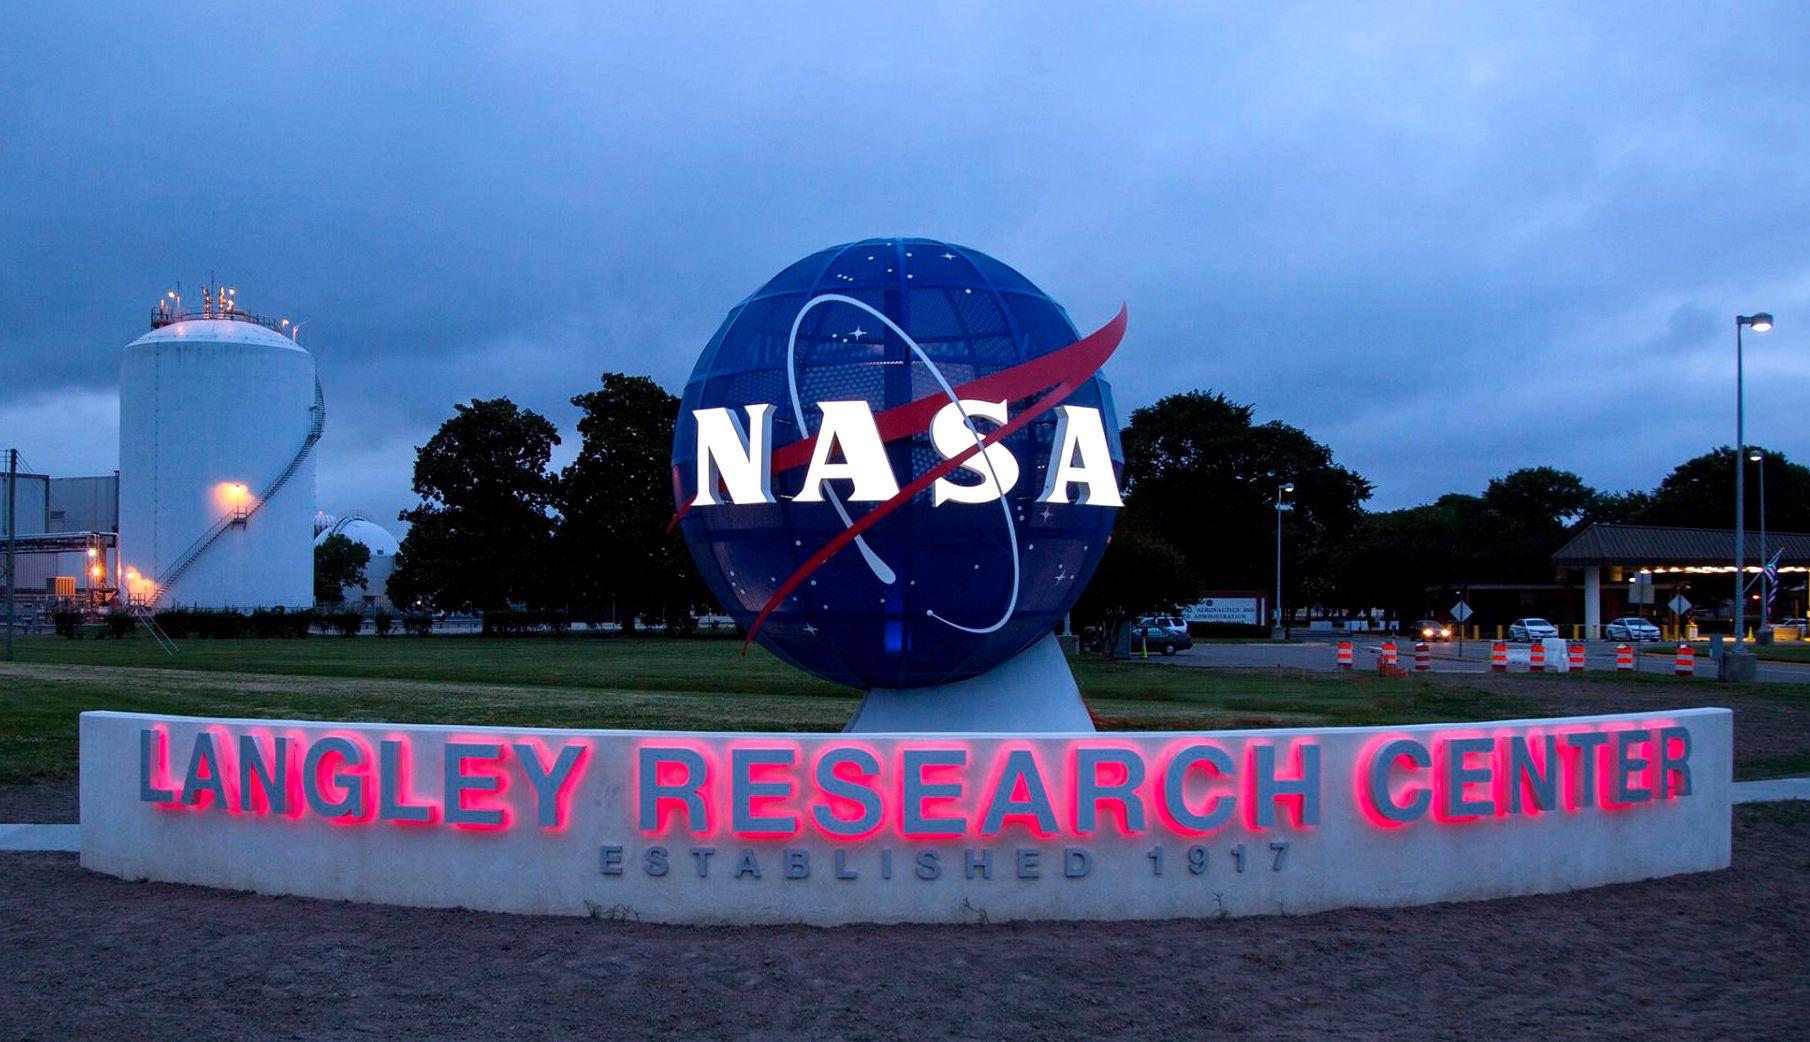 NASA Langley Research Center Logo - File:NASA Langley Research Center entrance (2017).jpg - Wikimedia ...